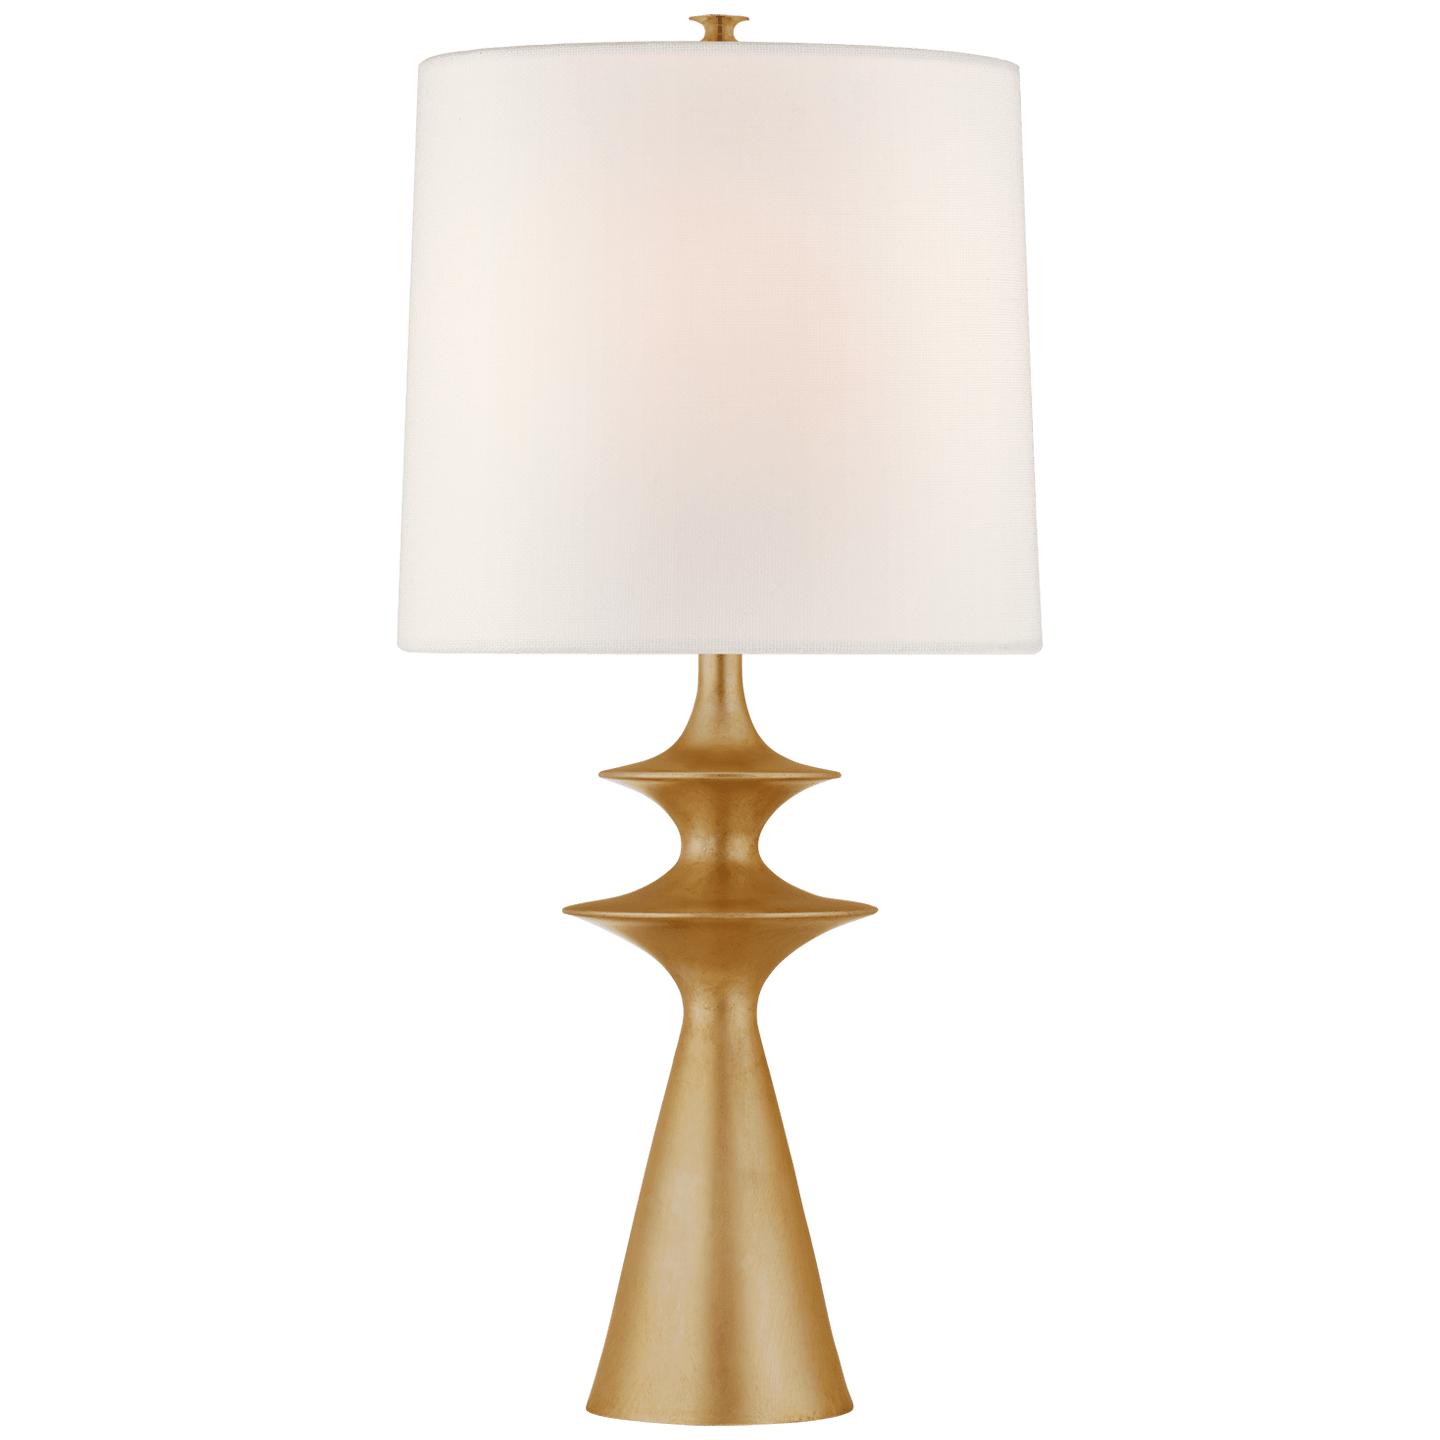 Купить Настольная лампа Lakmos Large Table Lamp в интернет-магазине roooms.ru